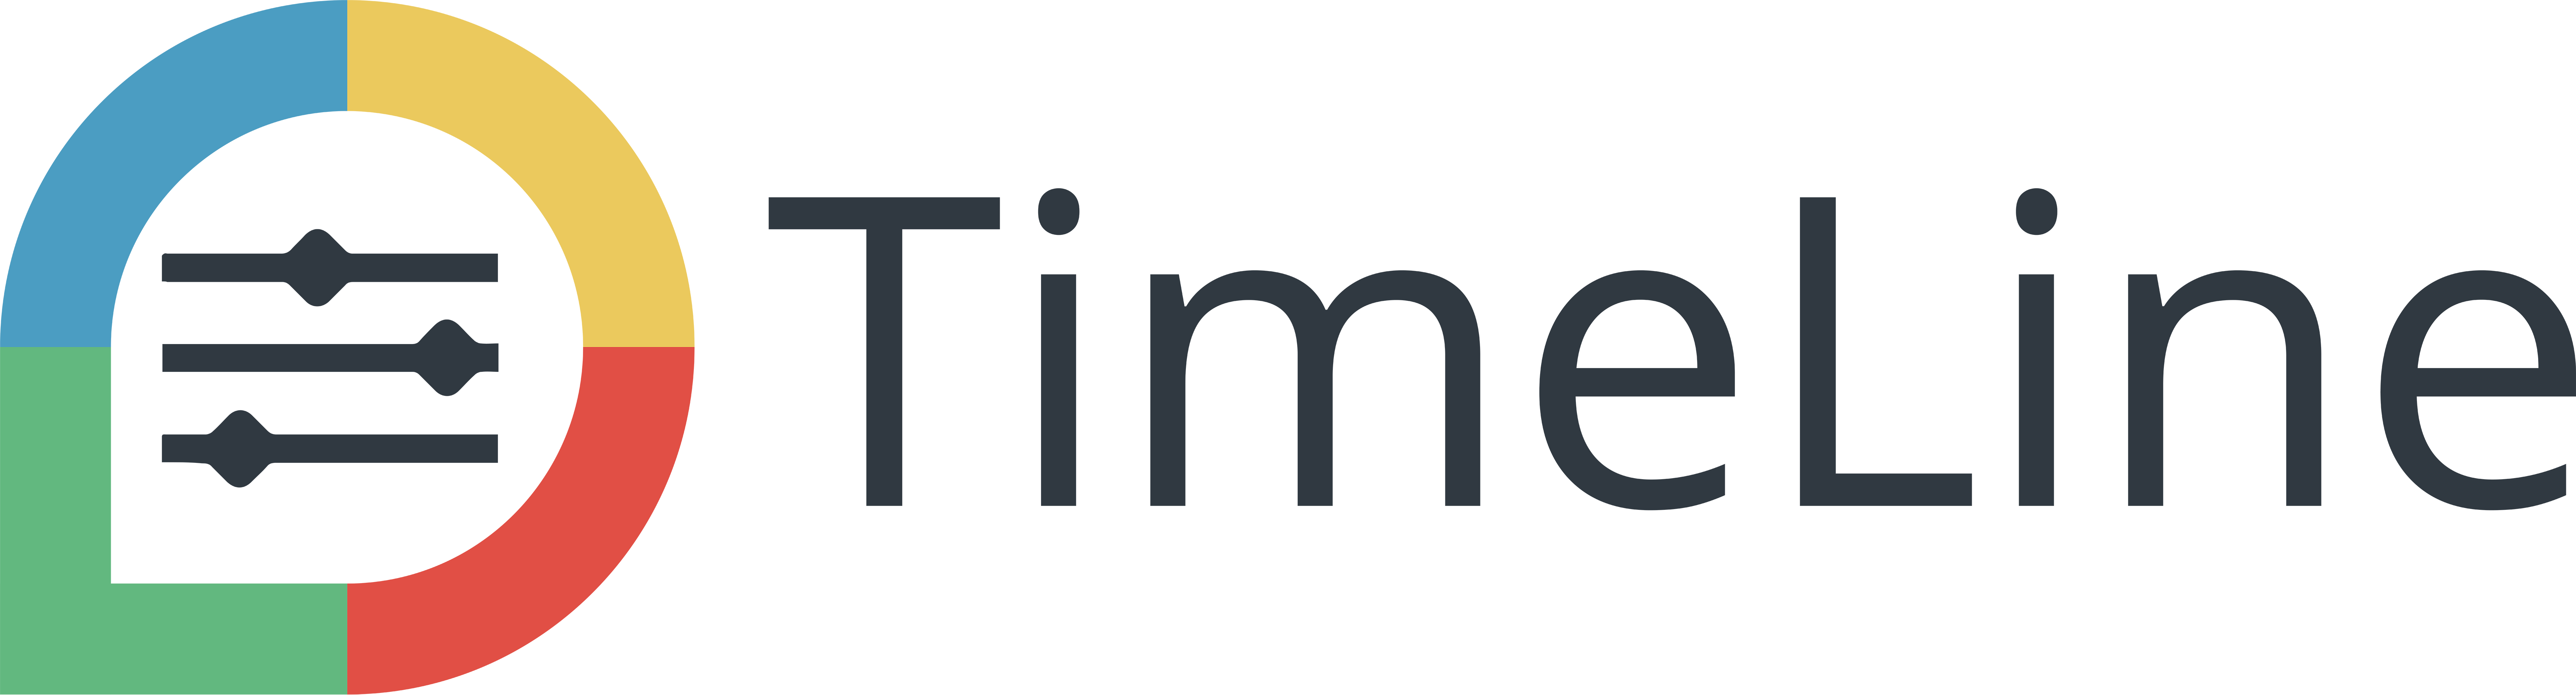 TimeLine Logo